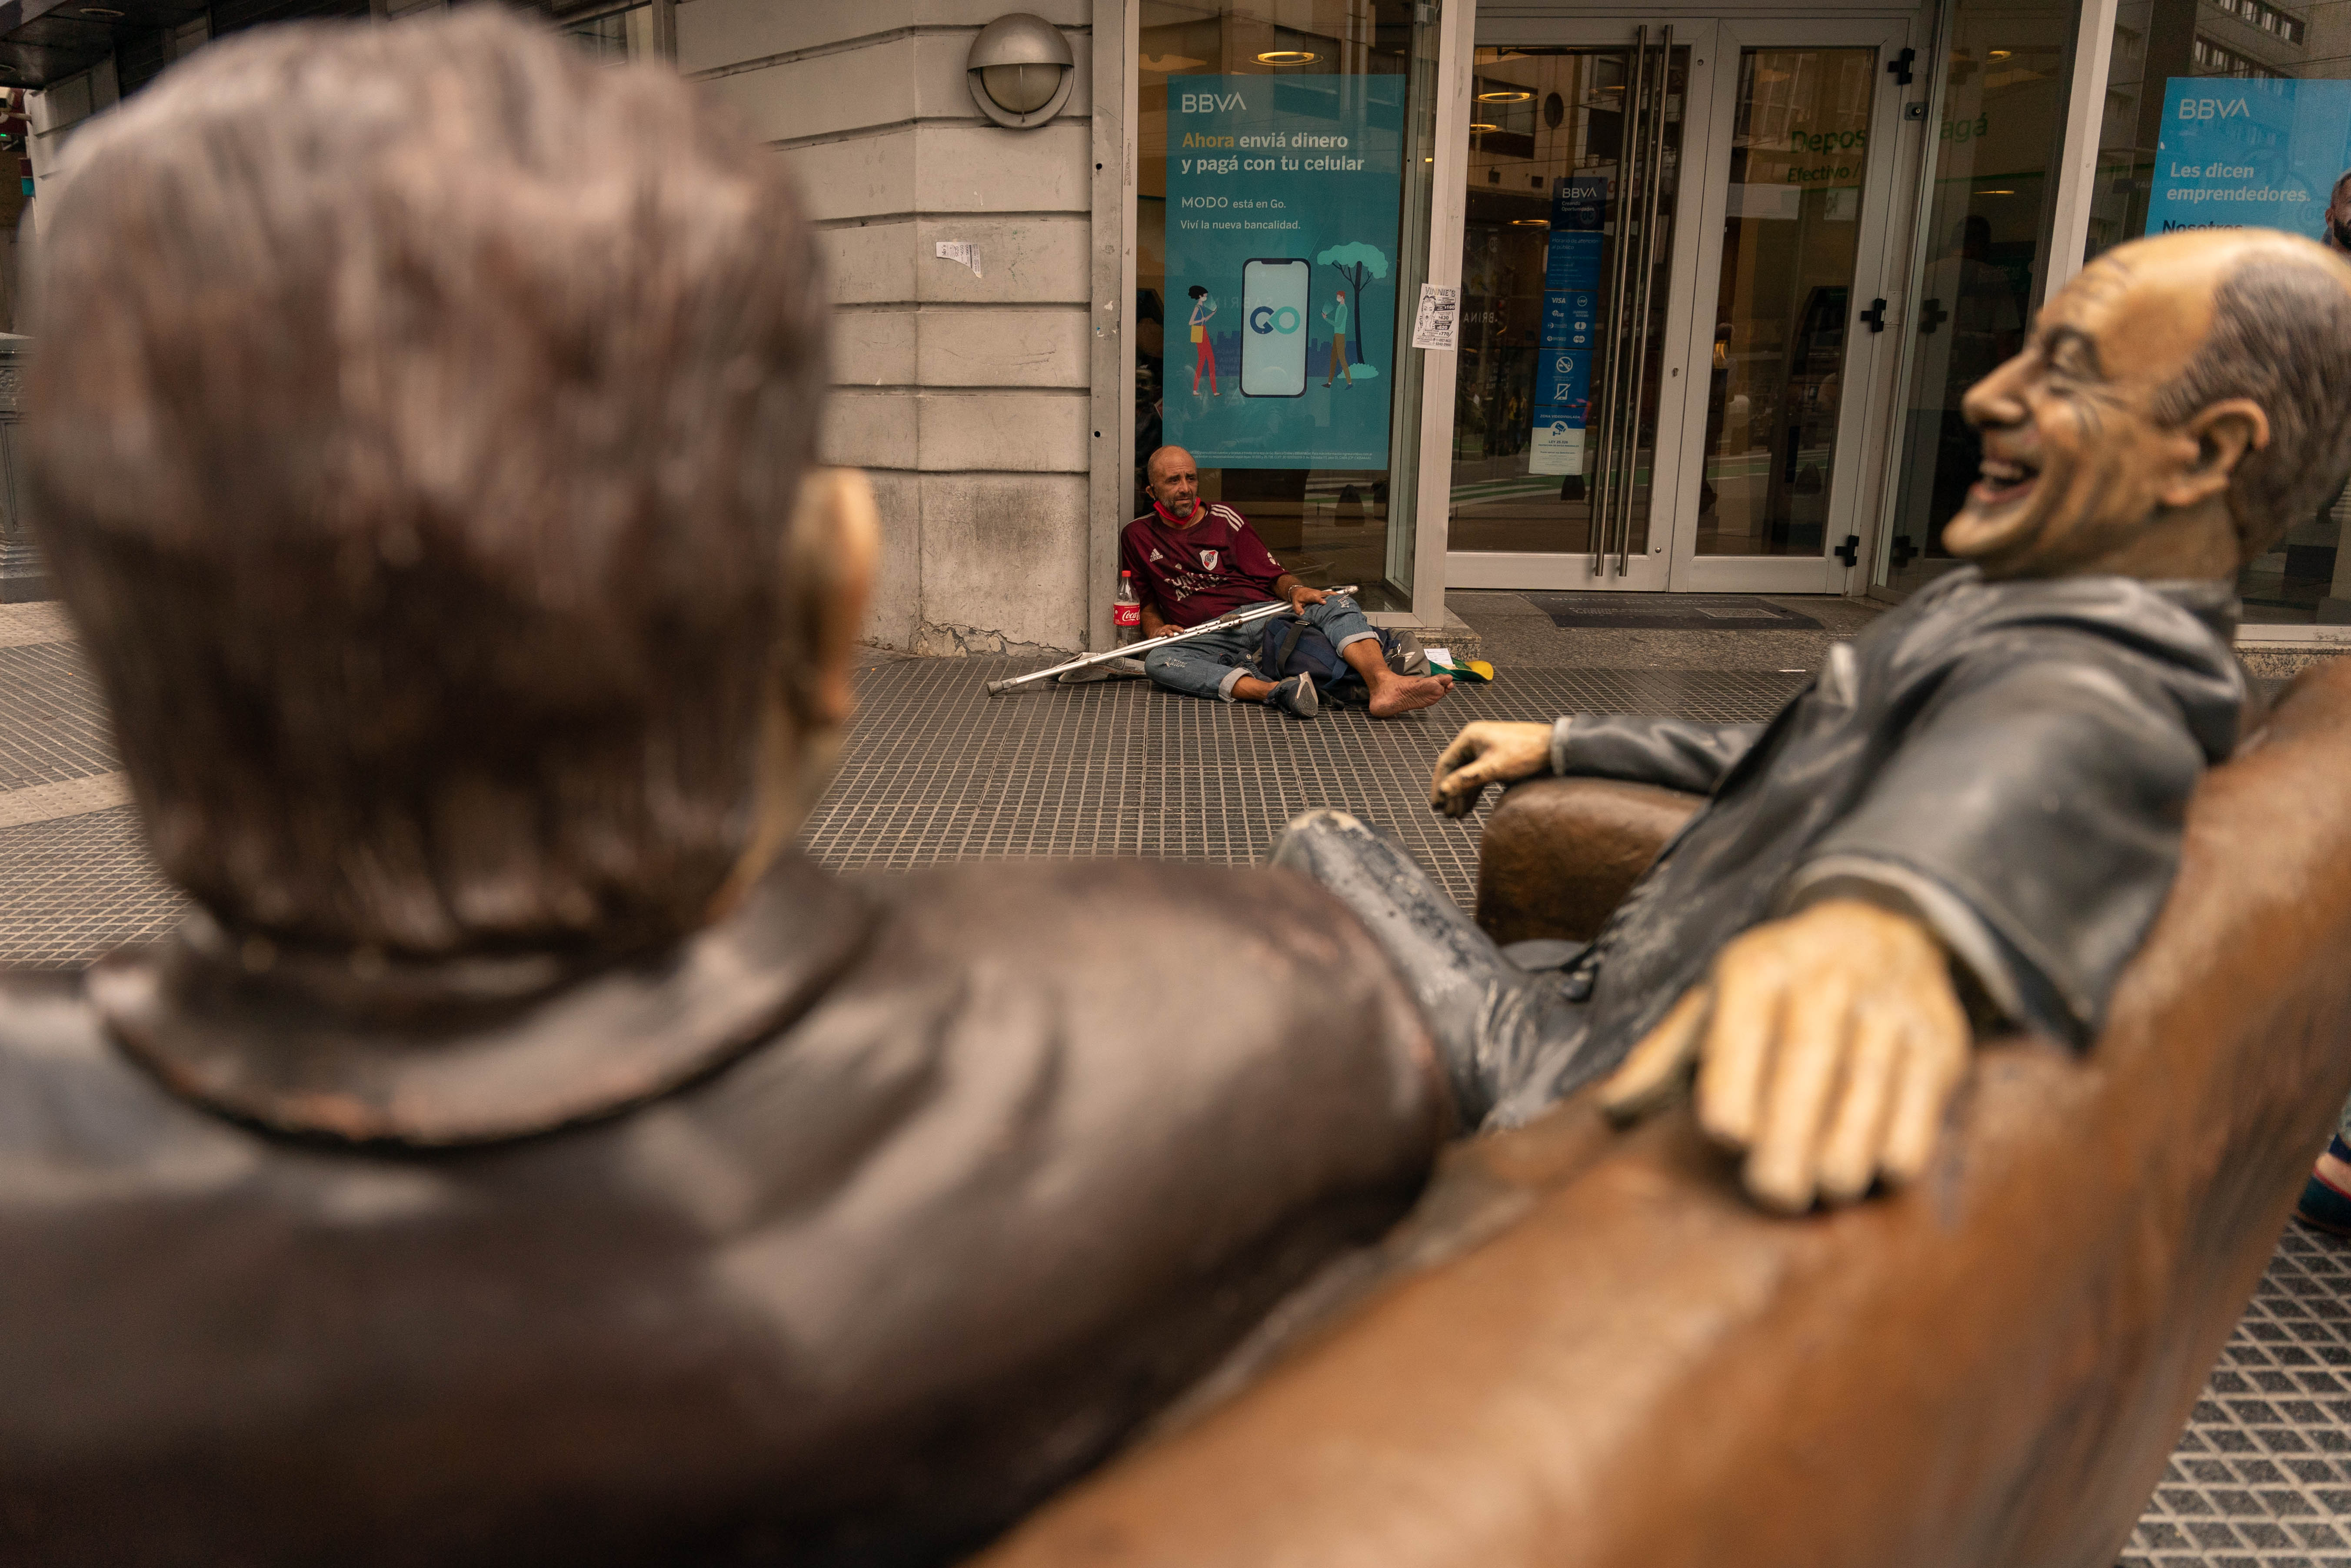 La alegre escultura de Olmedo y Portales, en la esquina de Corrientes y Uruguay, contrasta con la cantidad de gente en situación de calle y la crisis visible en todo el país. (Foto: Franco Fafasuli)